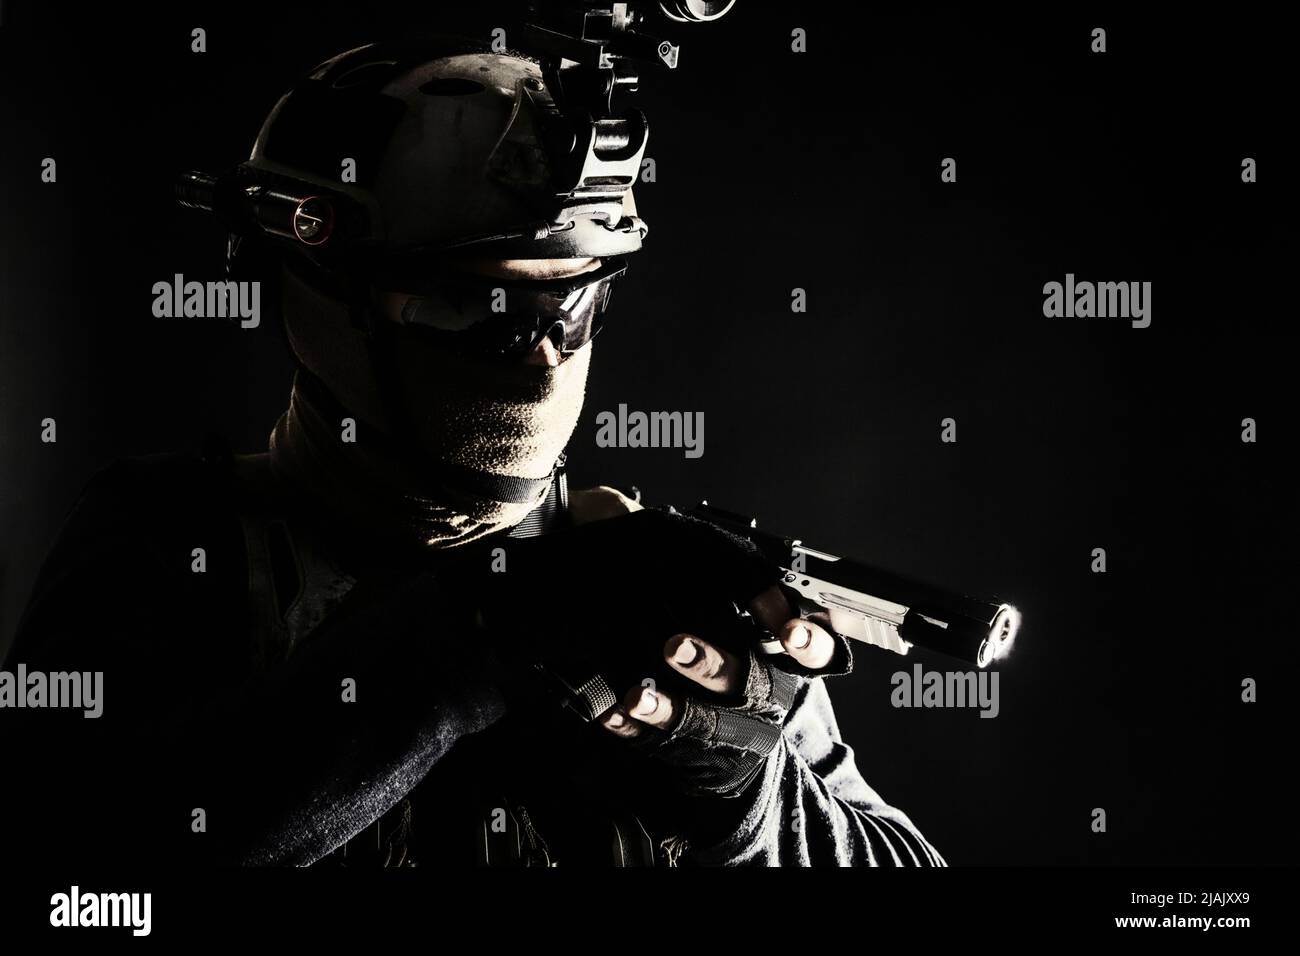 Polizei SWAT Team-Kämpfer mit Pistole, während schleichen in der Dunkelheit. Stockfoto